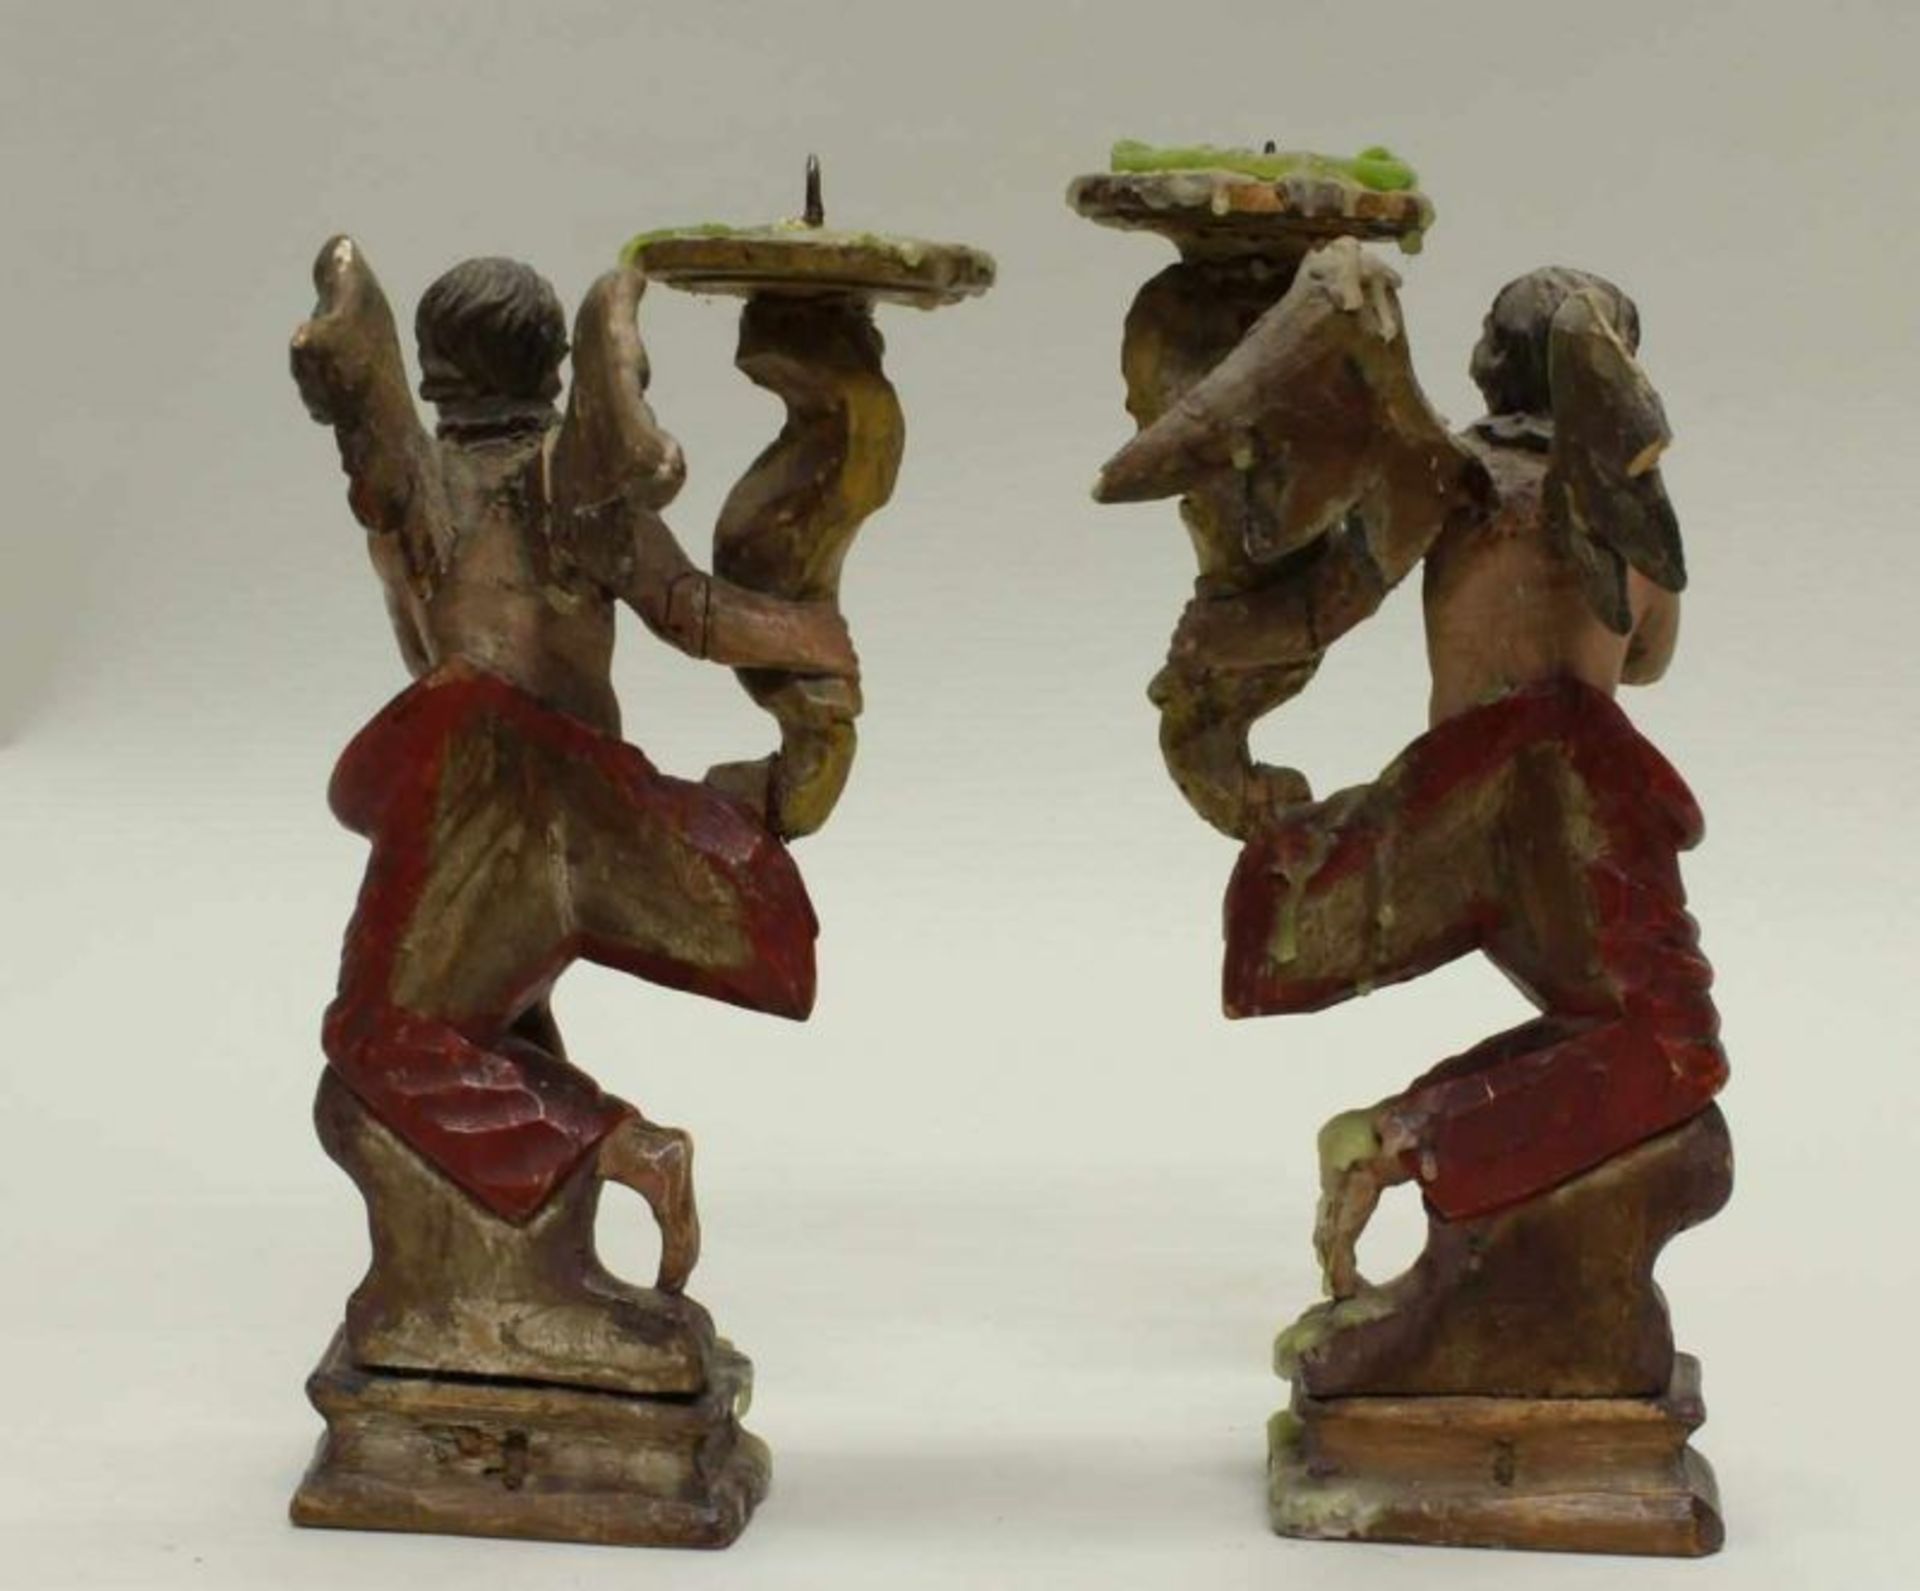 Paar Leuchterengel, Holz, gefasst, Anfang 20. Jh., 23 cm bzw. 24 cm hoch, geklebt, leicht beschädigt - Image 2 of 3